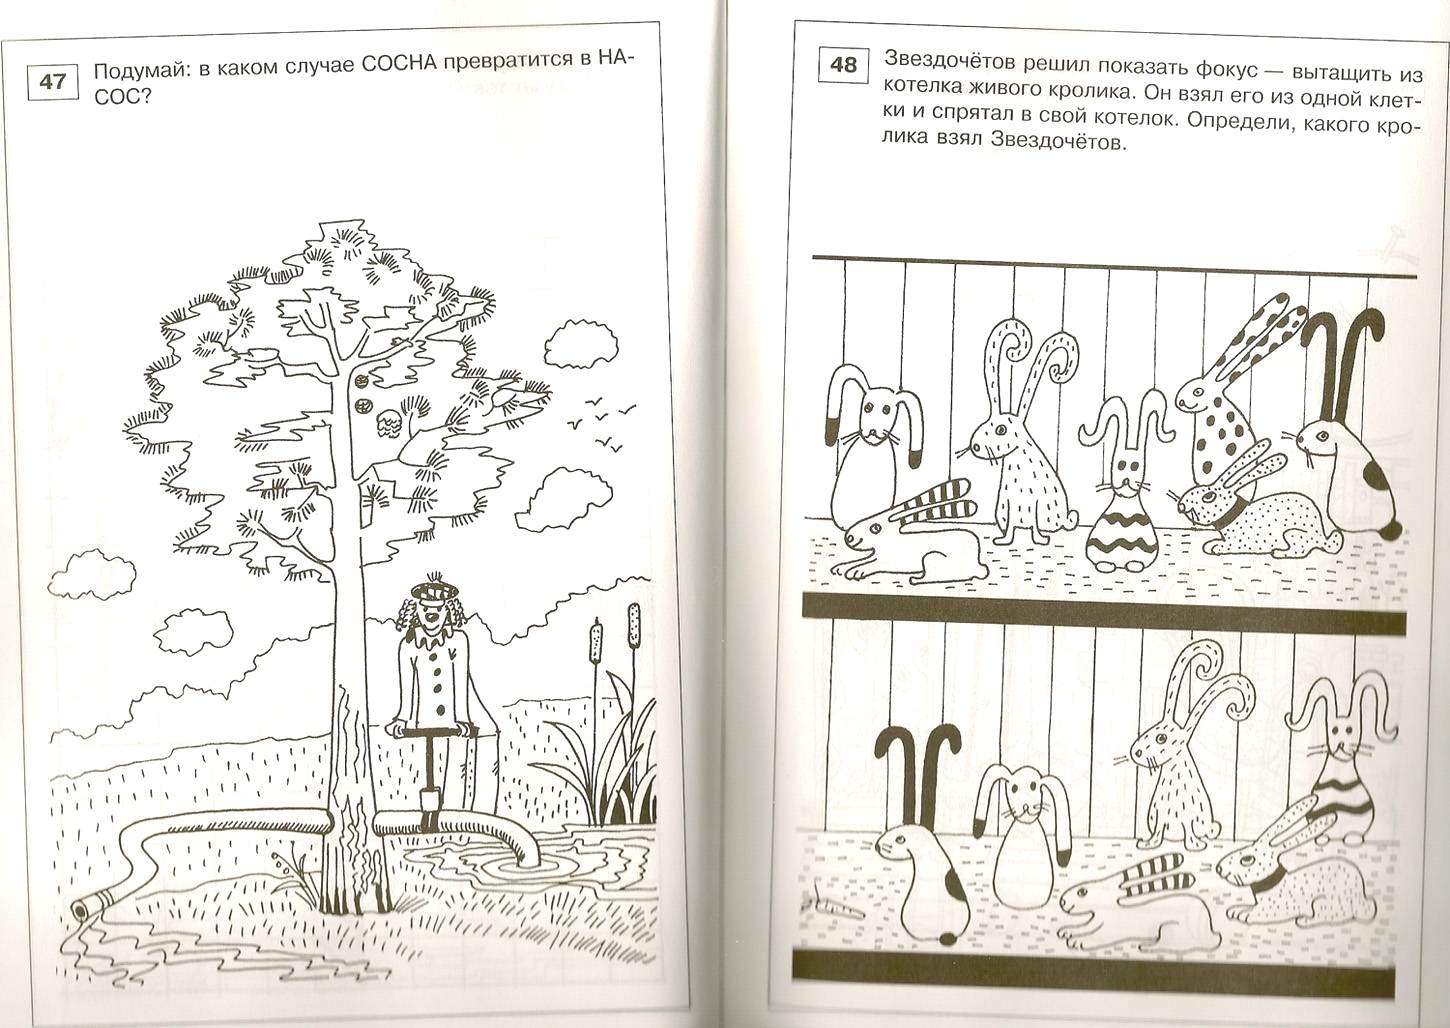 Книга Кодиненко Г.Ф. - Занимательные задачи и головоломки для детей 4-7 лет  